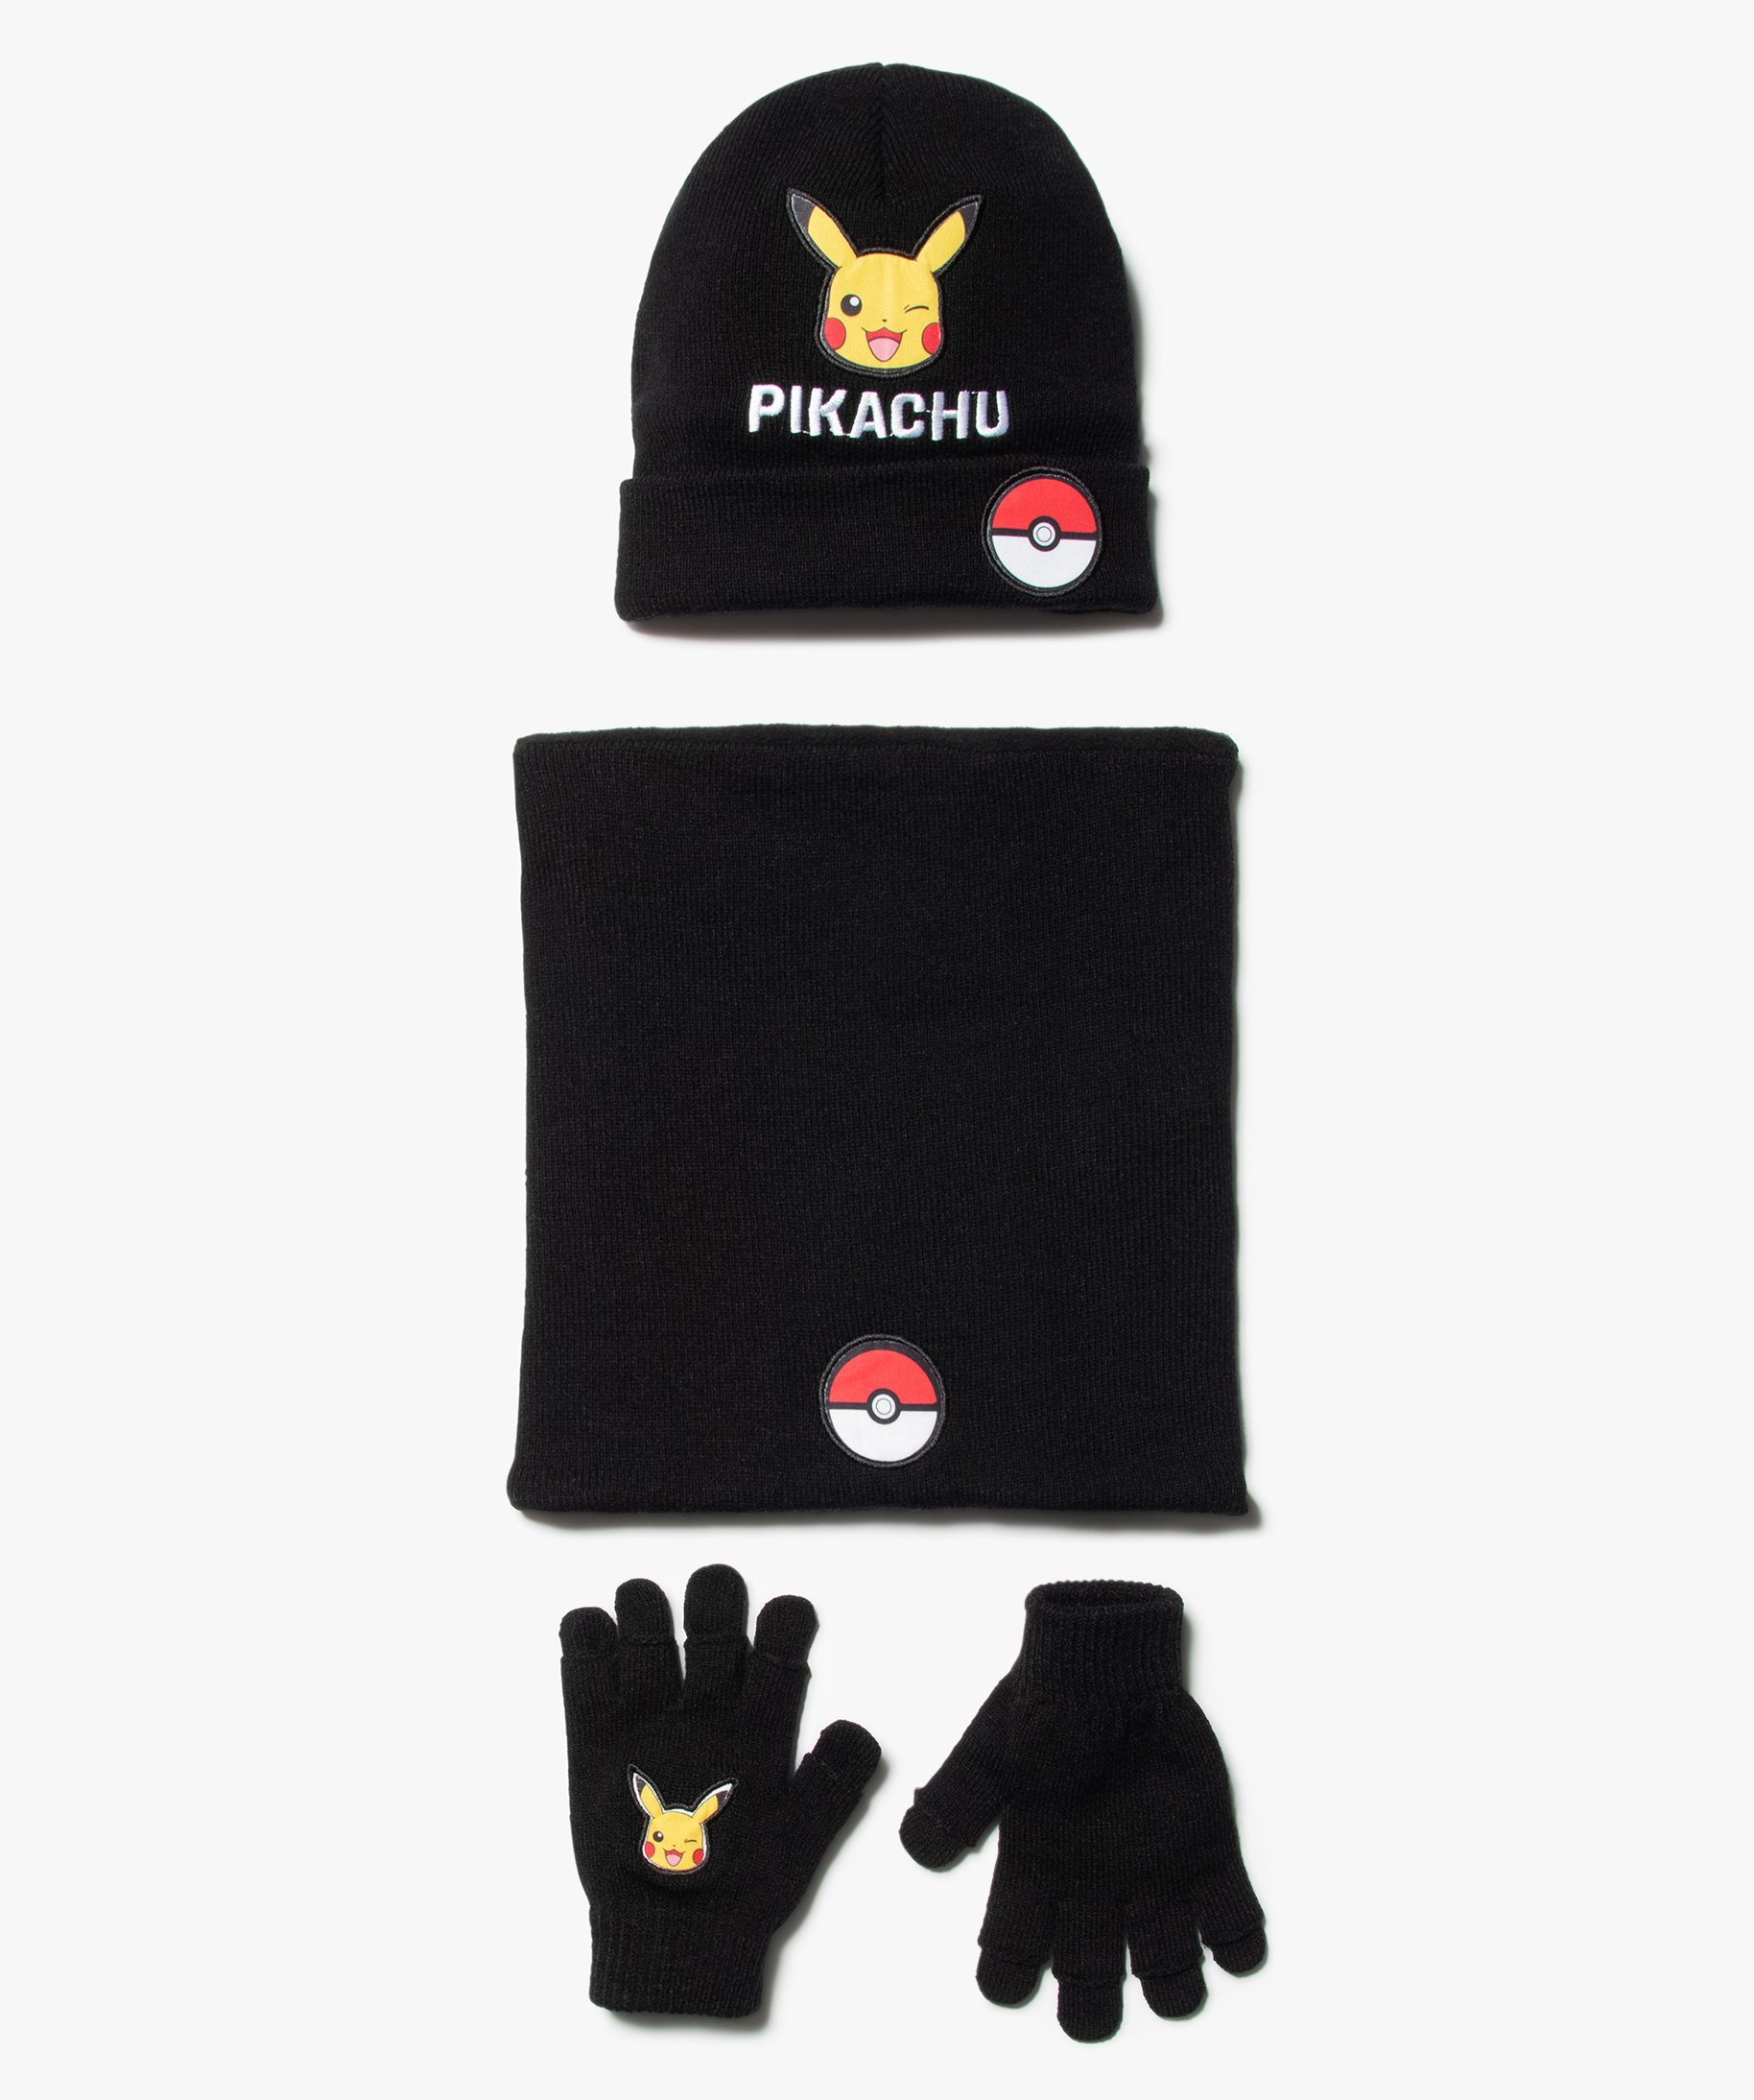 Pokémon Gemo Garçon Accessoires Bonnets & Chapeaux Casquettes Casquette enfant imprimé Pikachu 